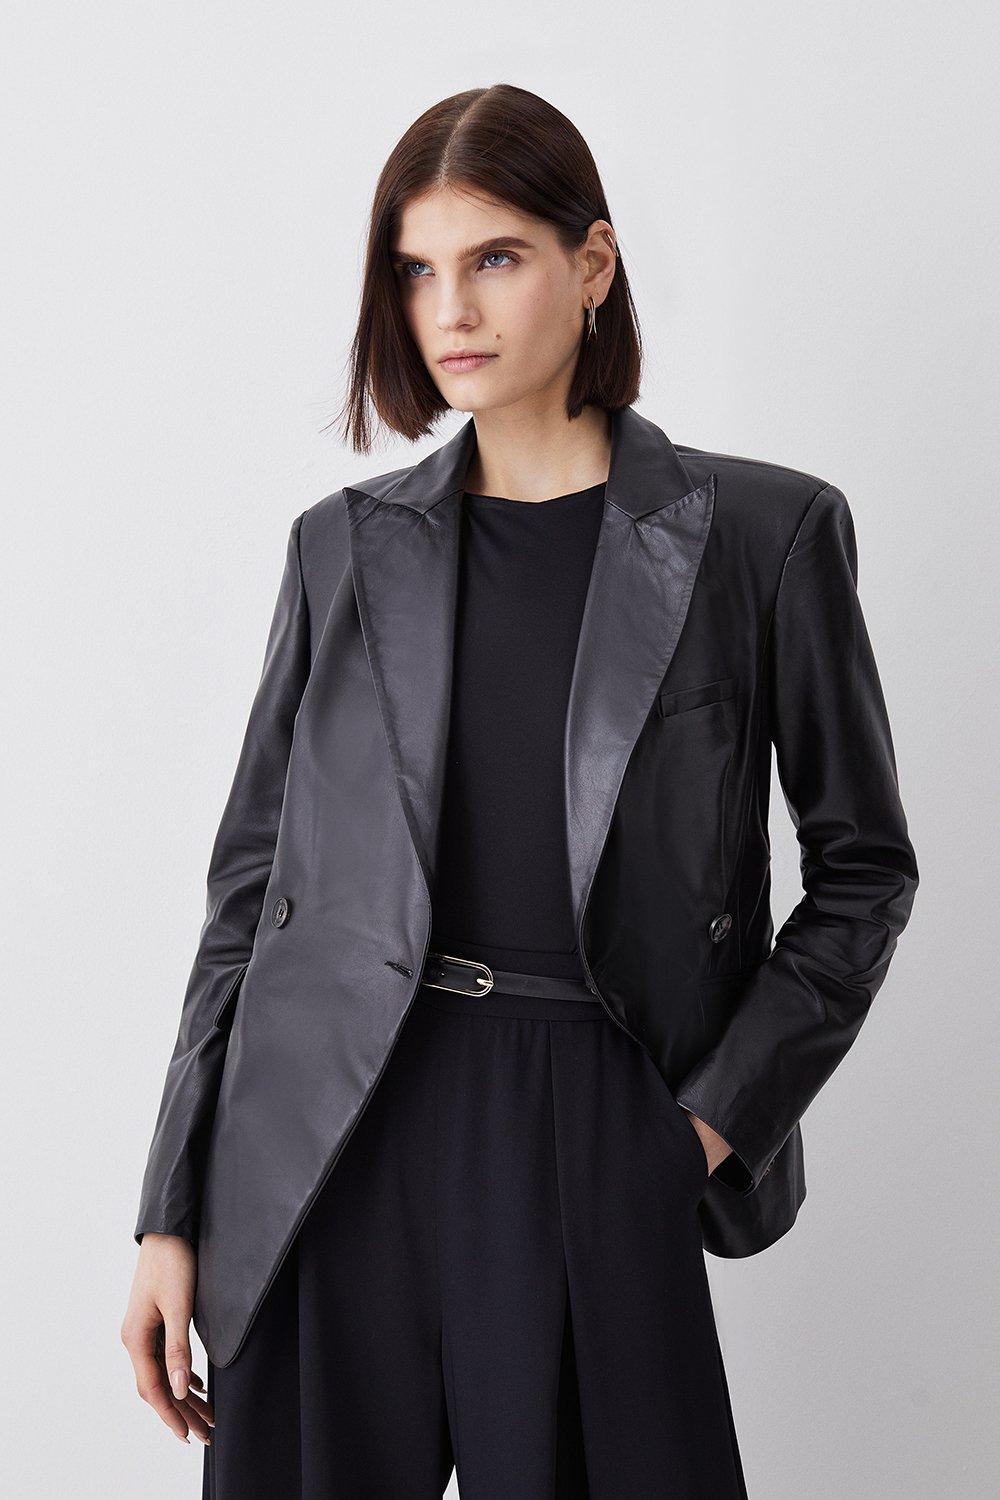 Karen Millen Womens Leather Gold Button Blazer - Black - Size 8